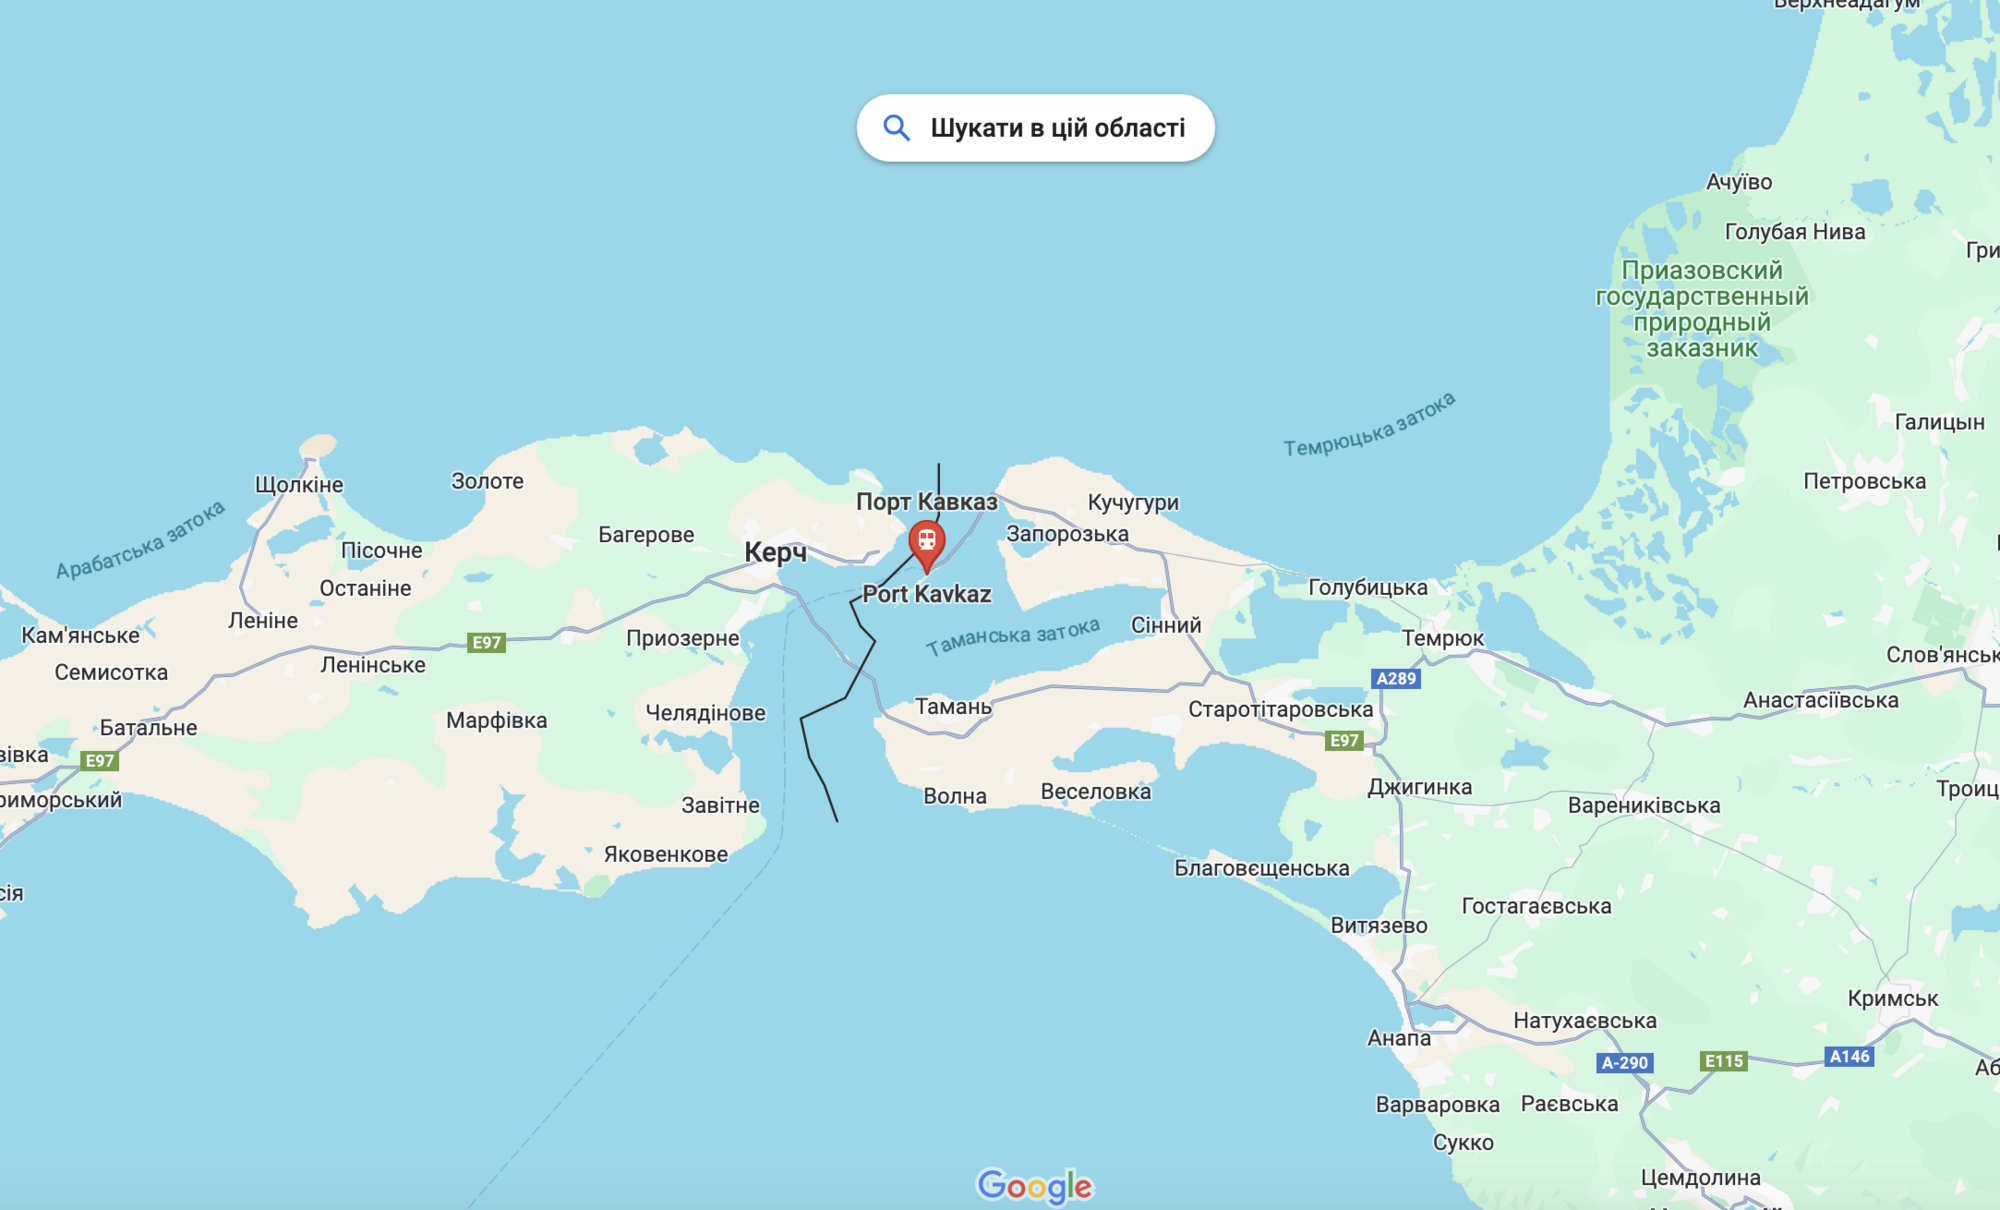 ВСУ частично разрушили нефтебазу порта "Кавказ" возле Керчи: опубликованы спутниковые фото